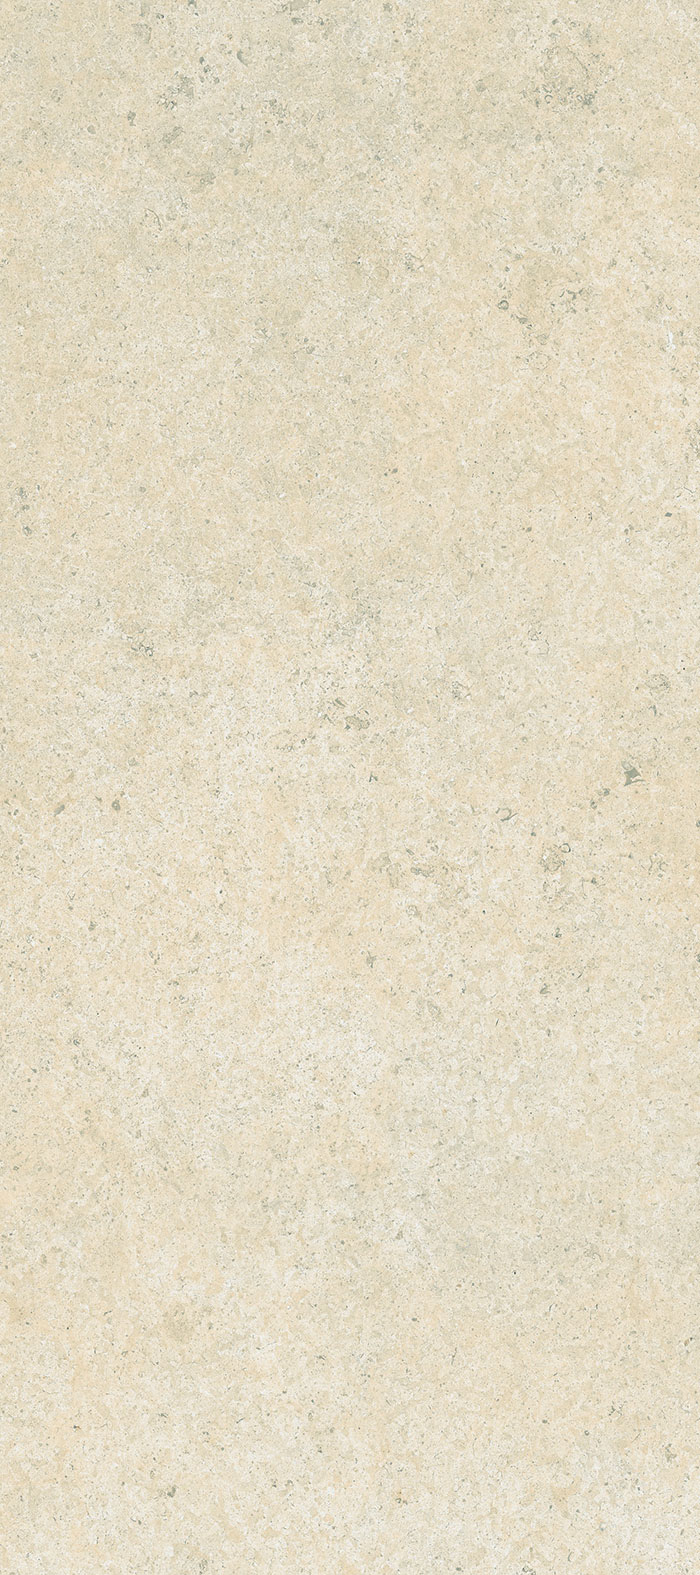 Широкоформатный керамогранит, Maxfine, Pietre Lunar Stone